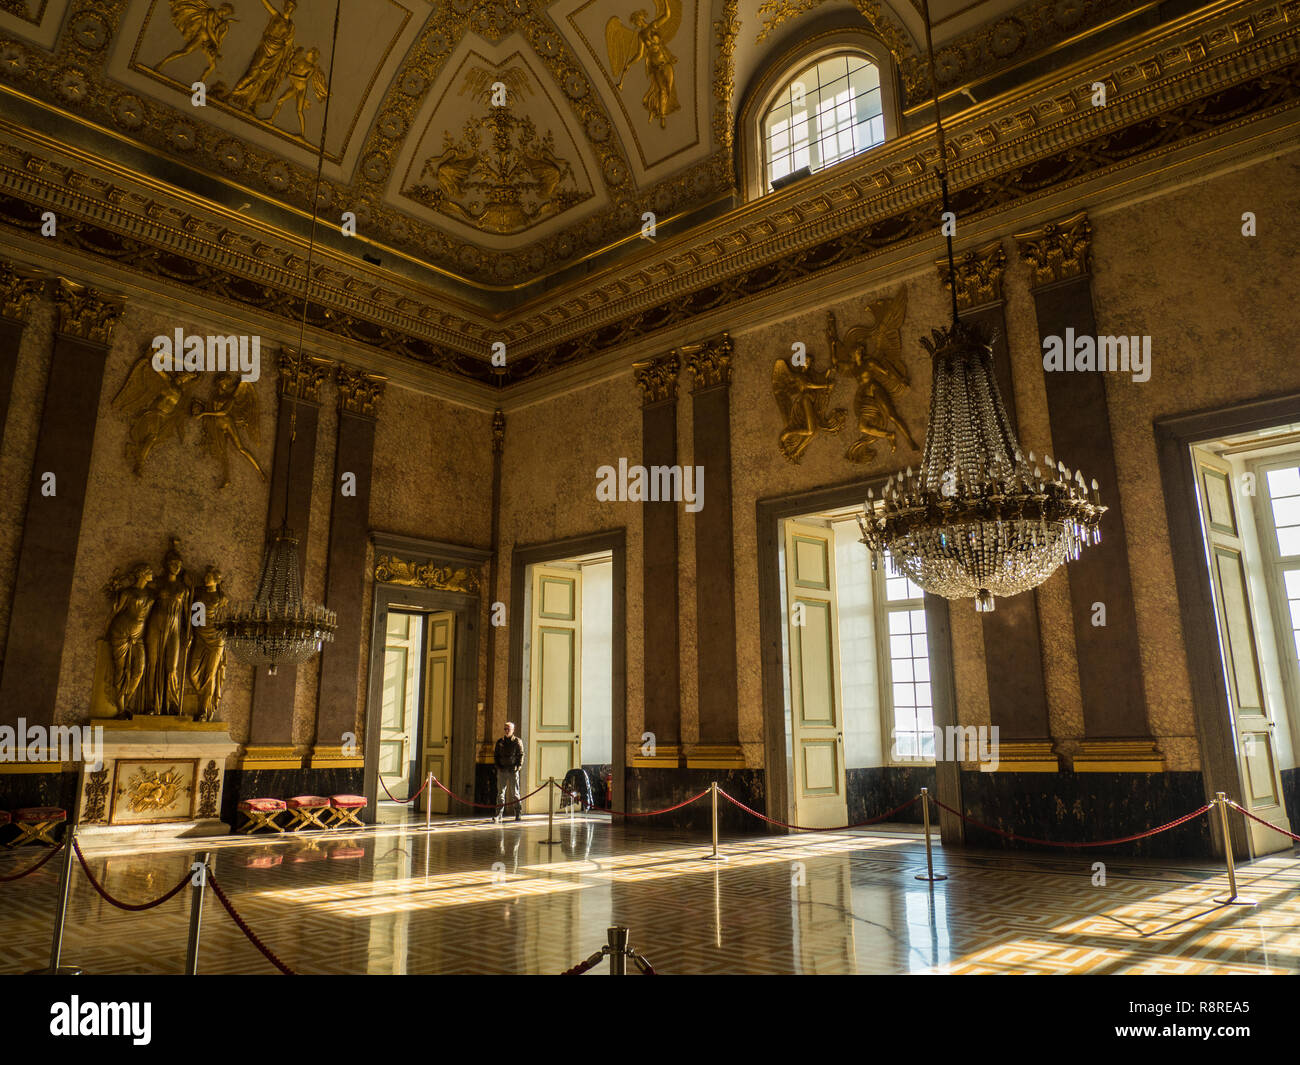 Interno del Palazzo Reale di Caserta, una ex residenza reale nella regione Campania,l'Italia. Foto Stock